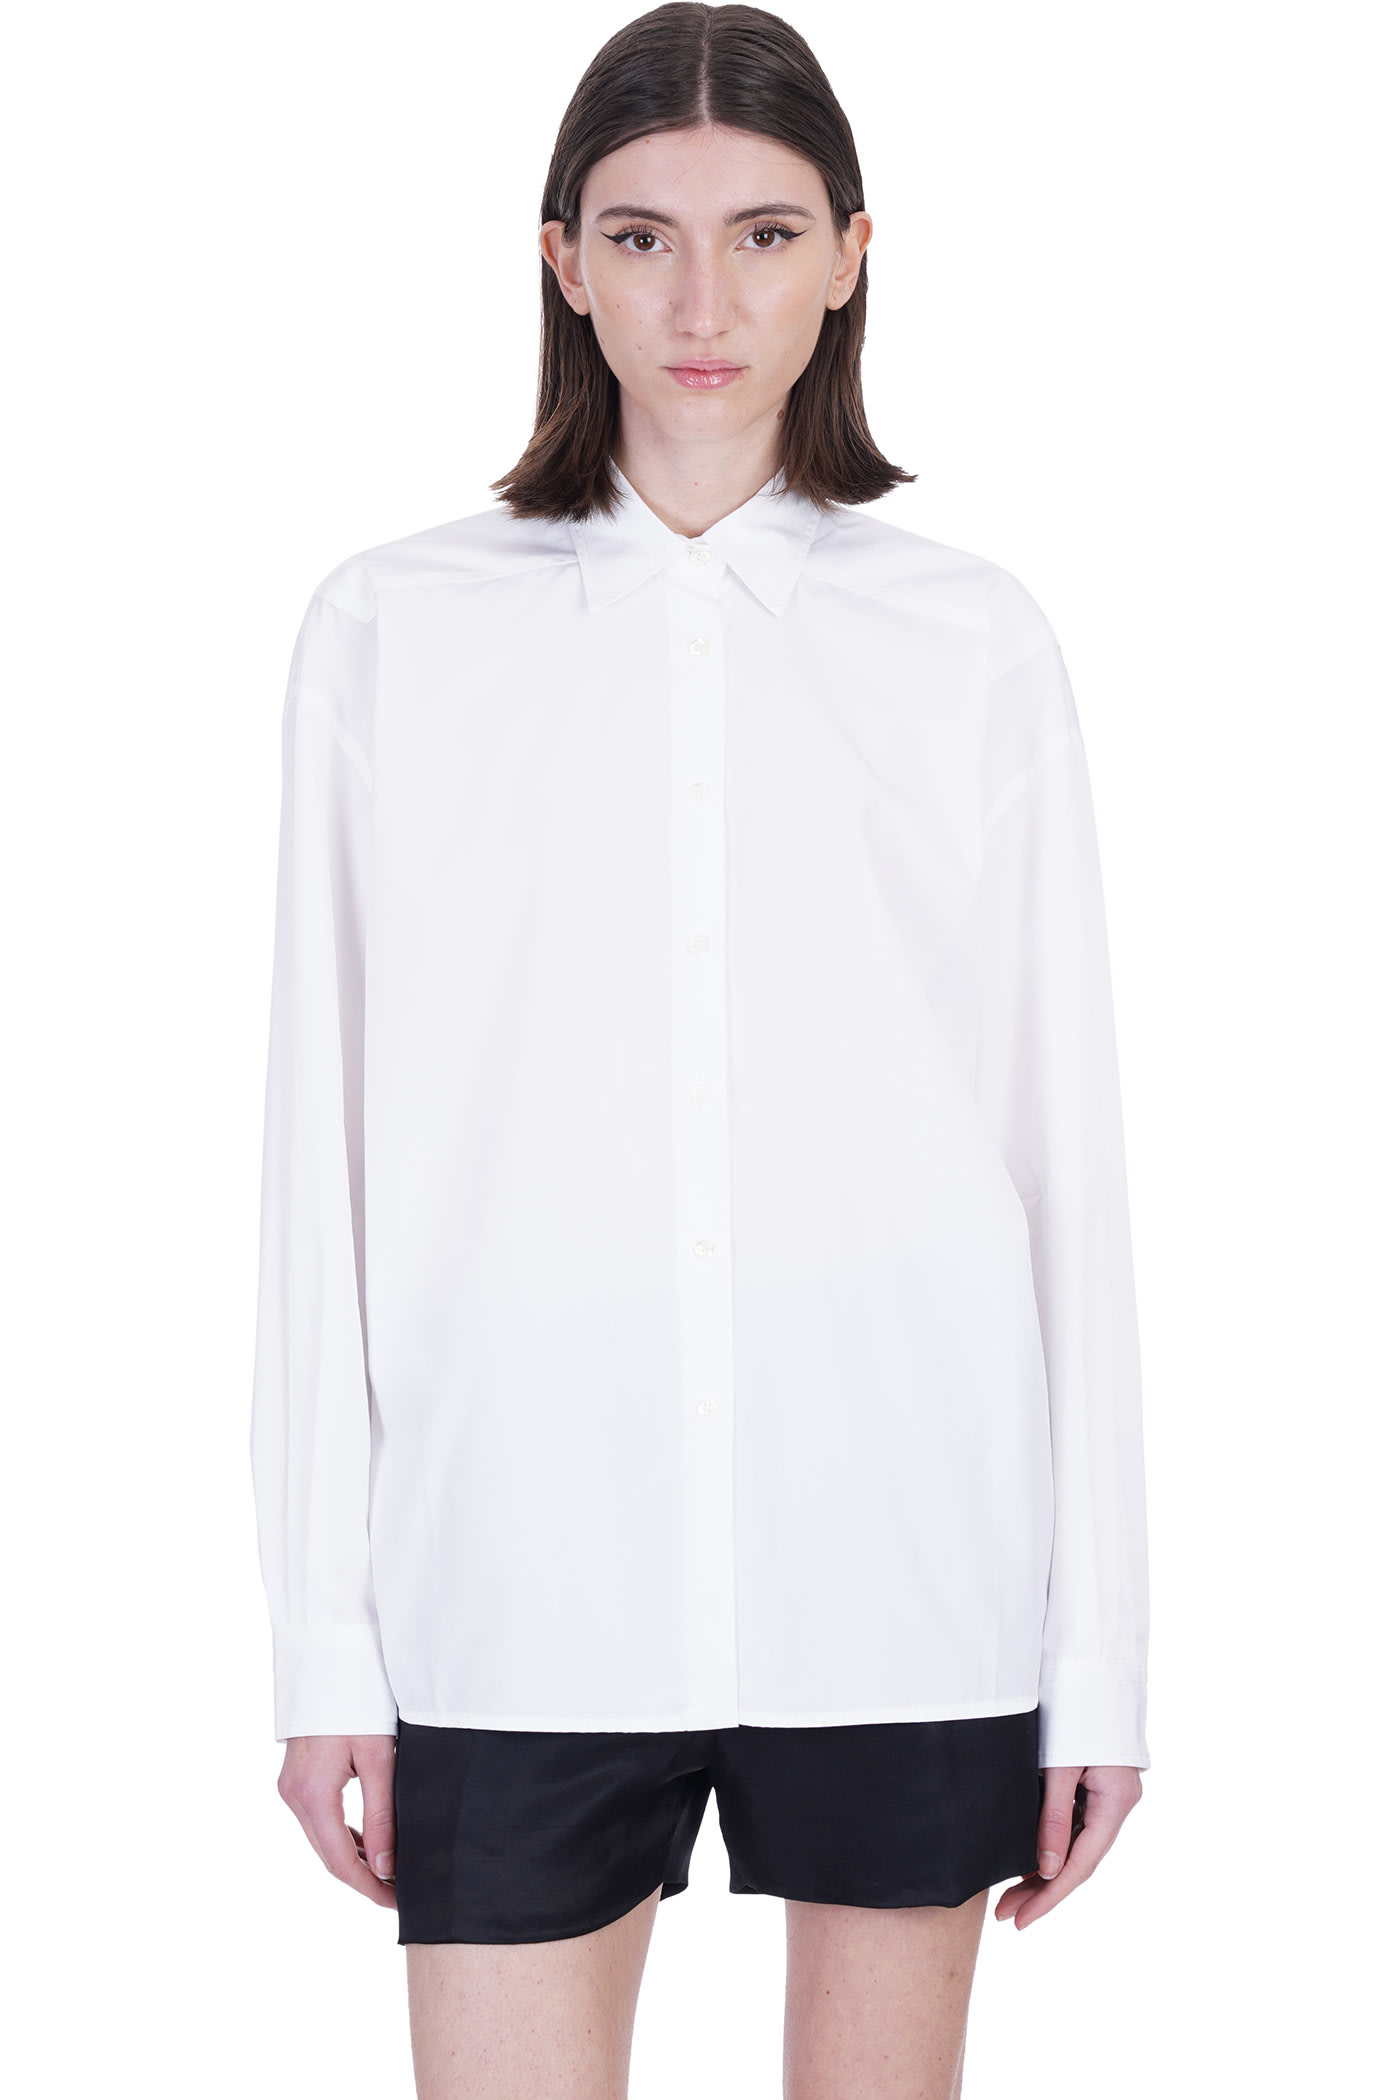 Laneus Shirt In White Cotton